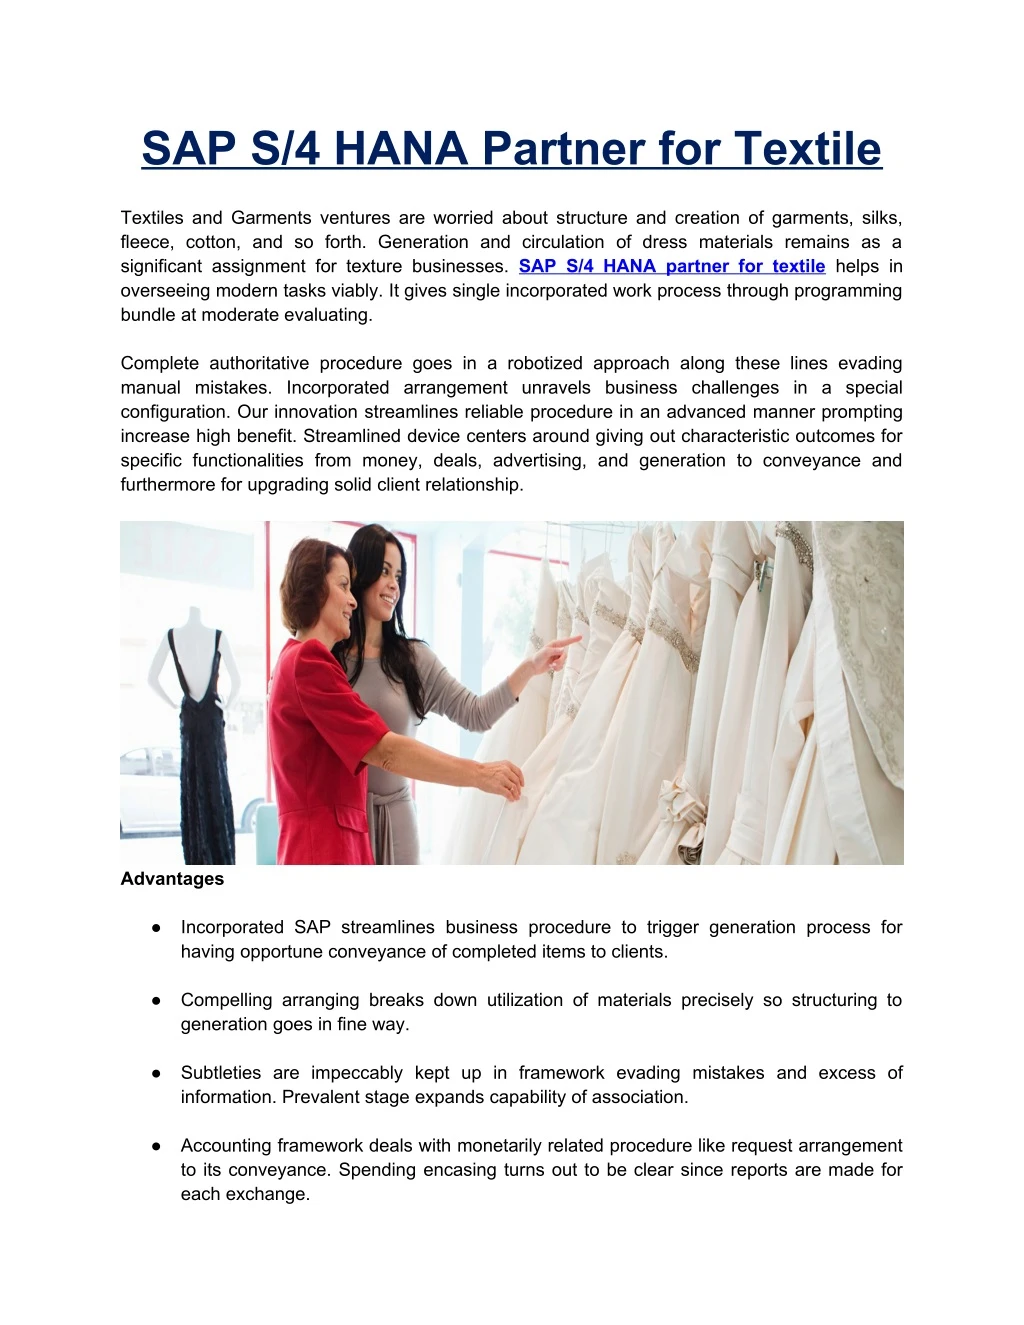 sap s 4 hana partner for textile